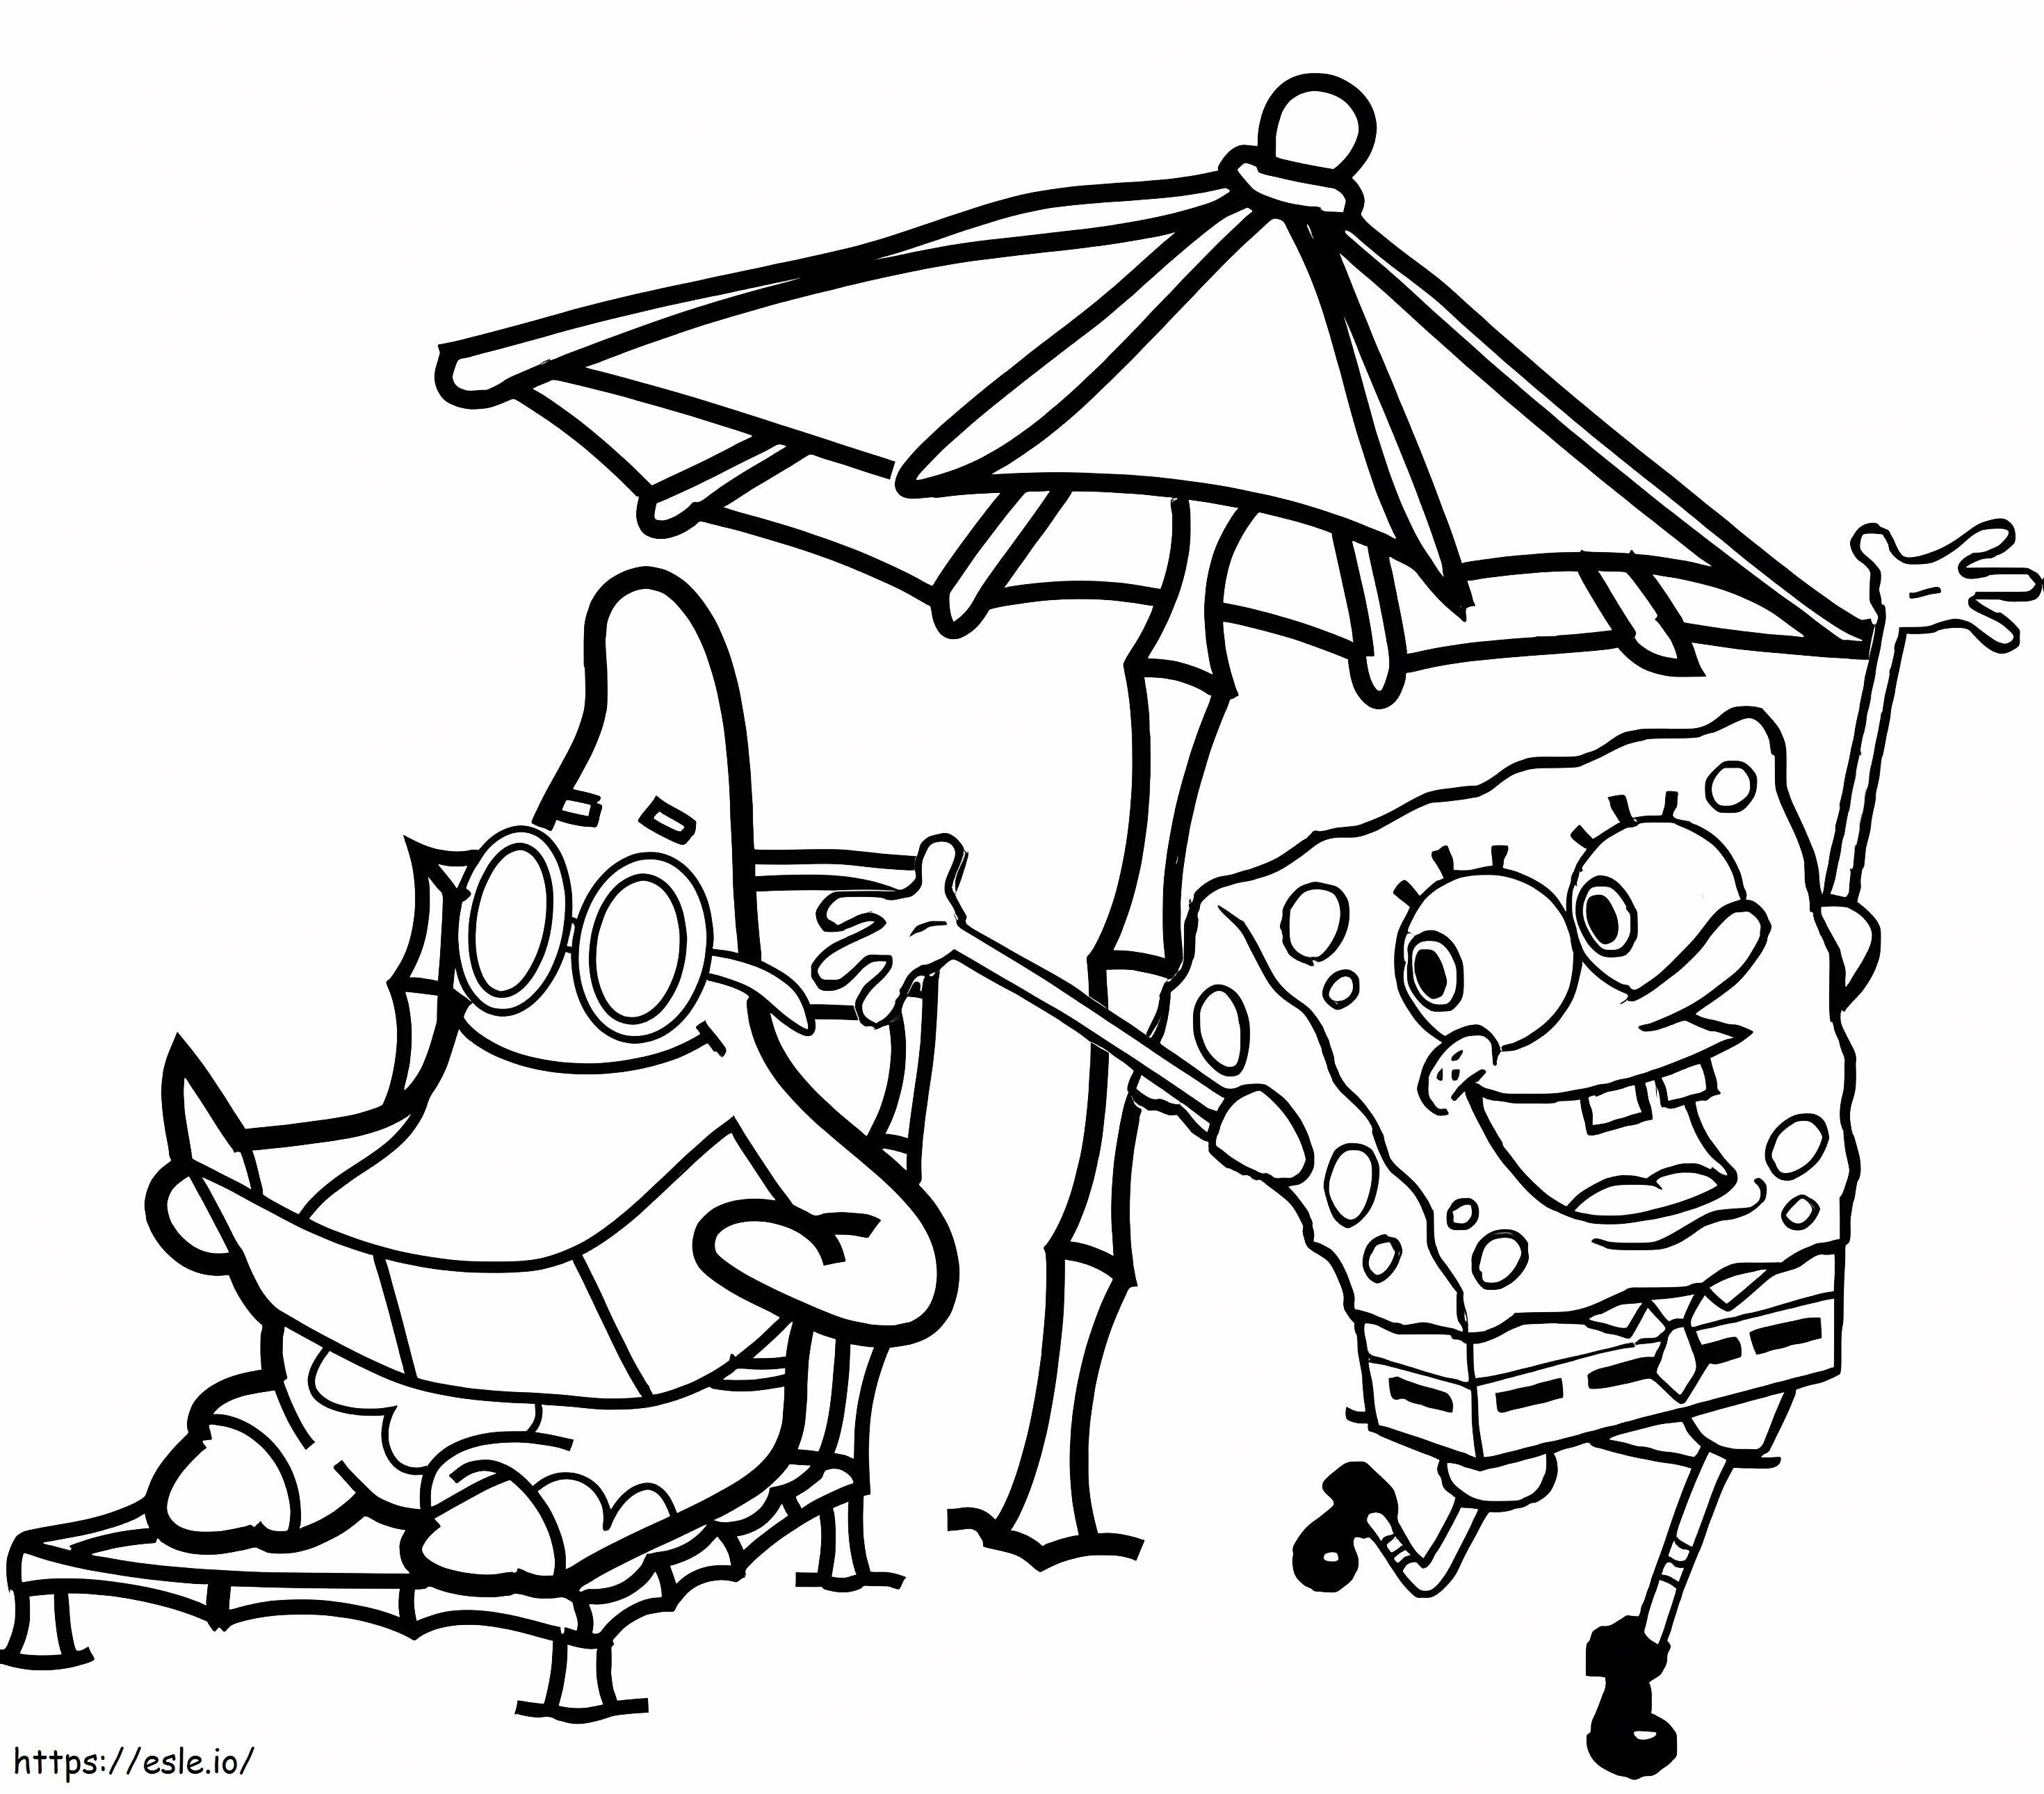 Patrick Star und SpongeBob am Strand ausmalbilder